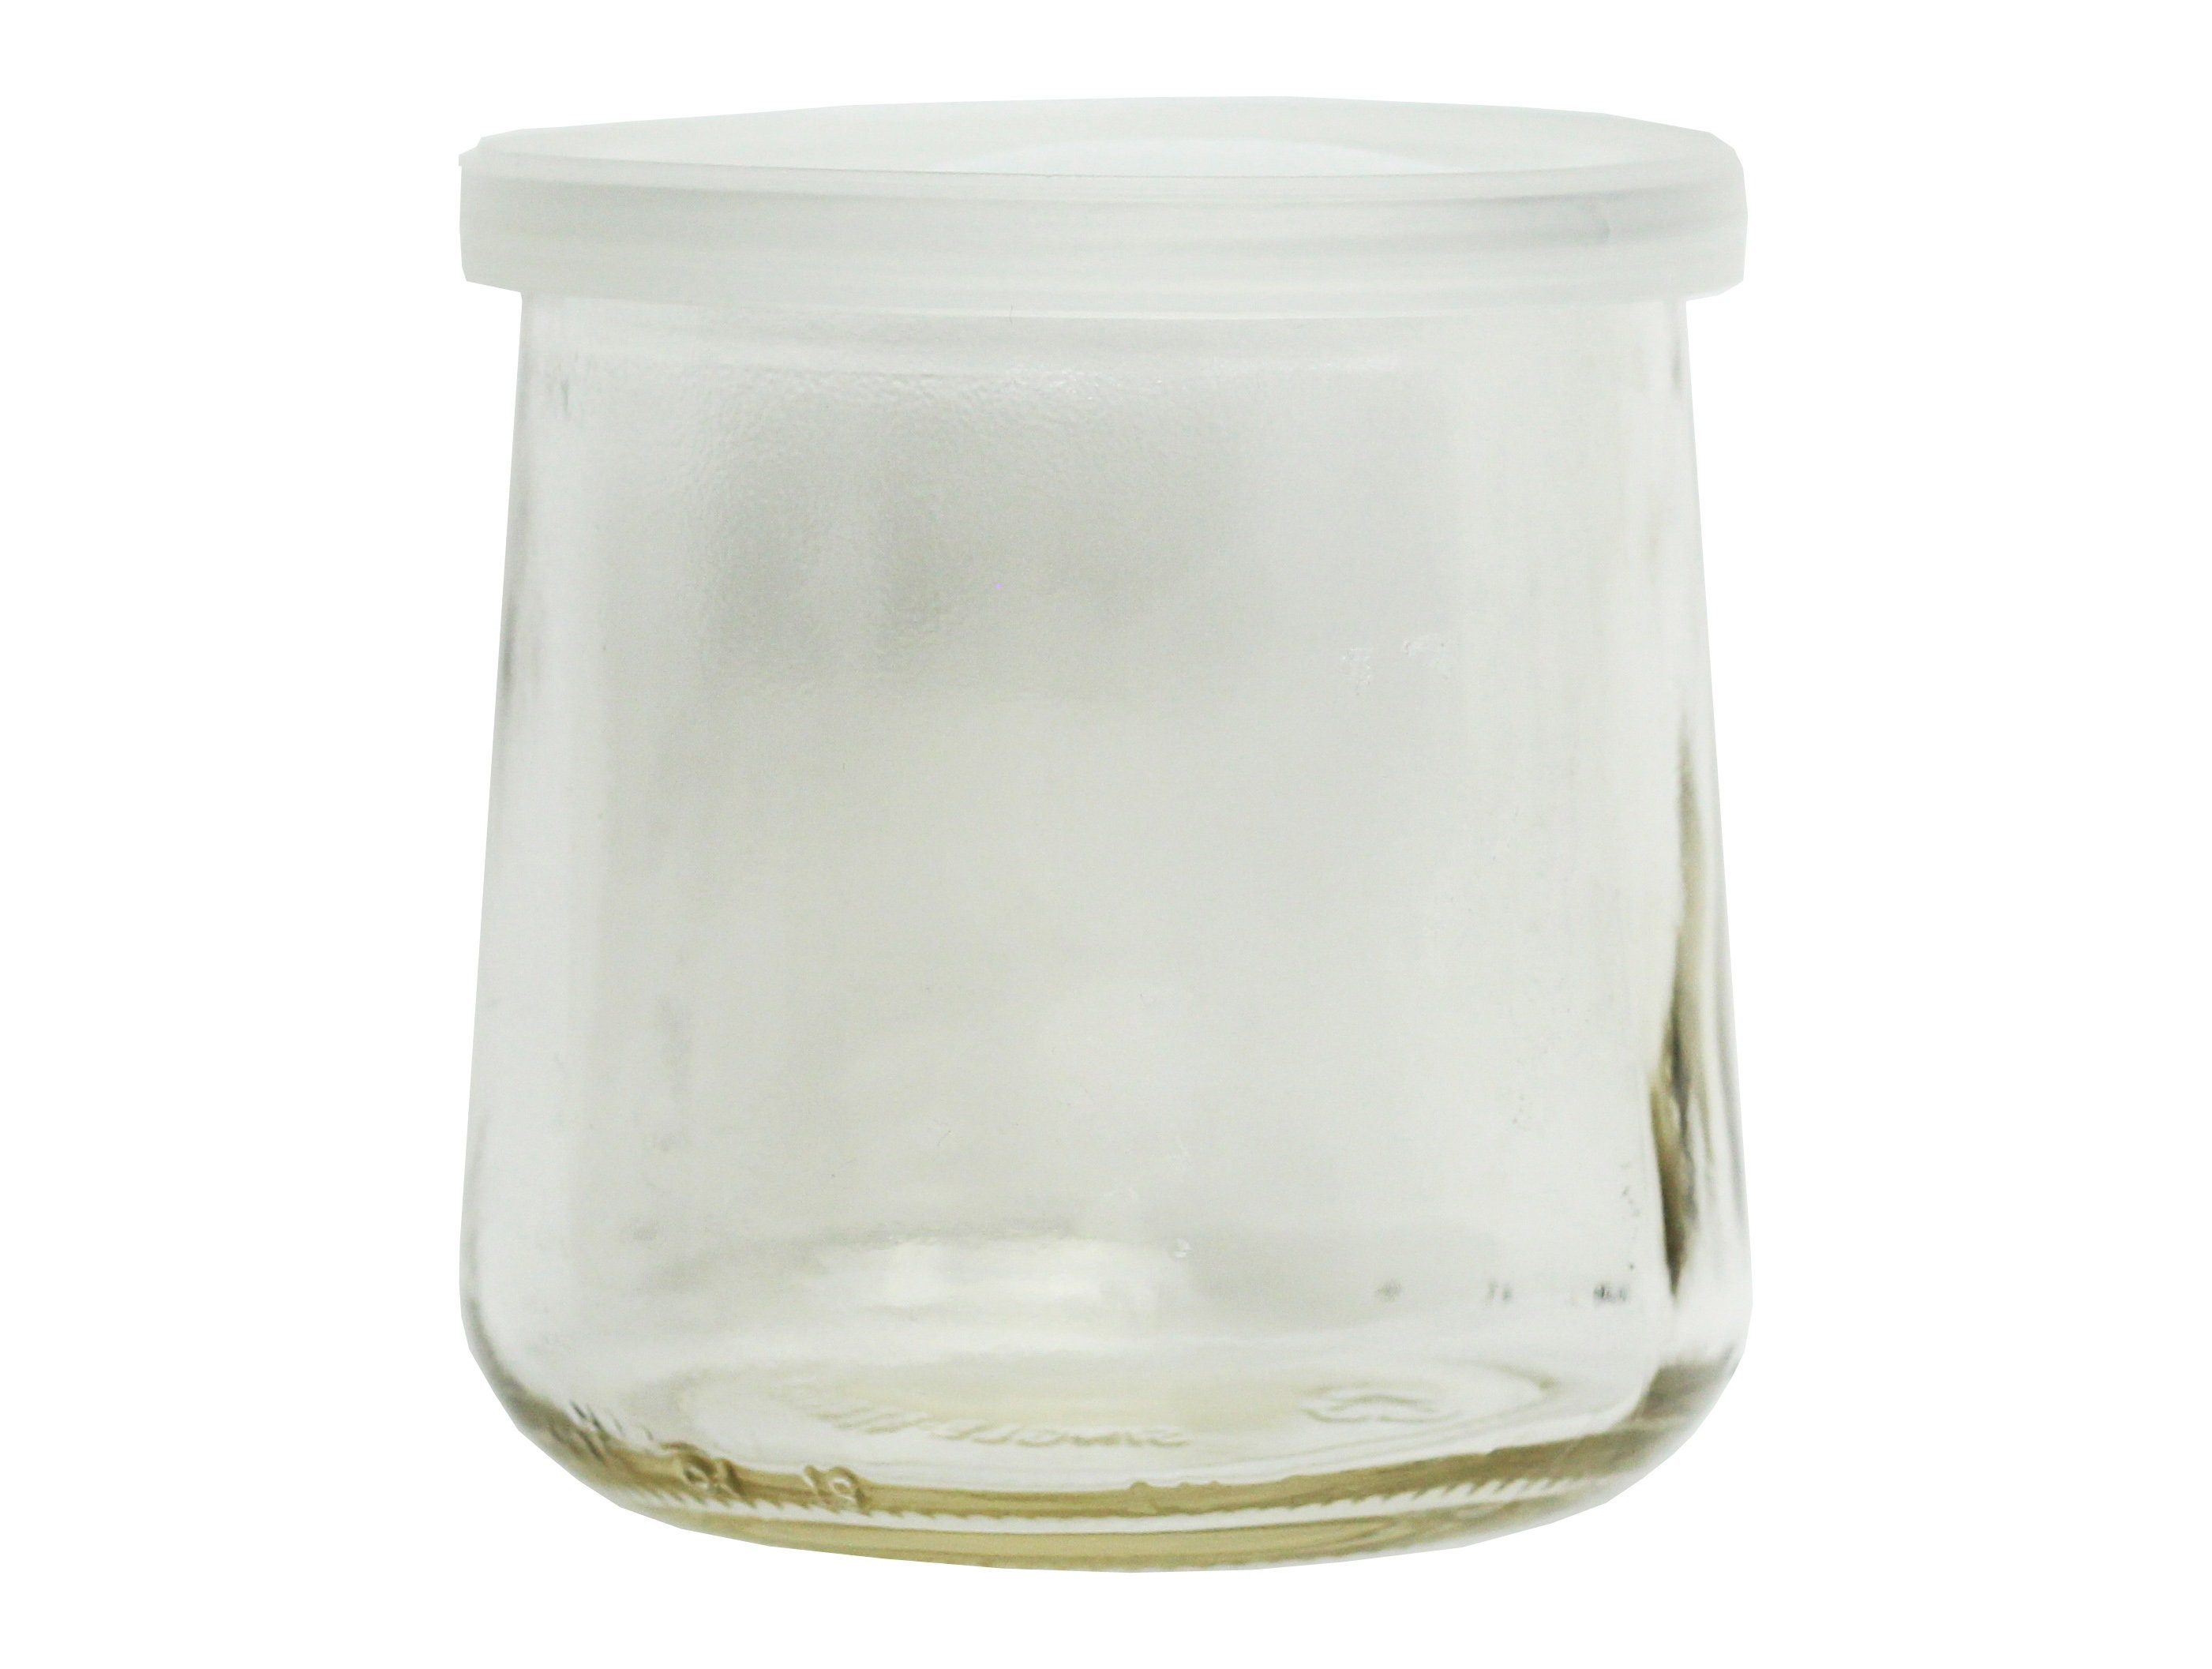 Hatrigo 4 oz Clear Glass Jars With Lids, 10-Piece Glass Yogurt Jars Set  with Color